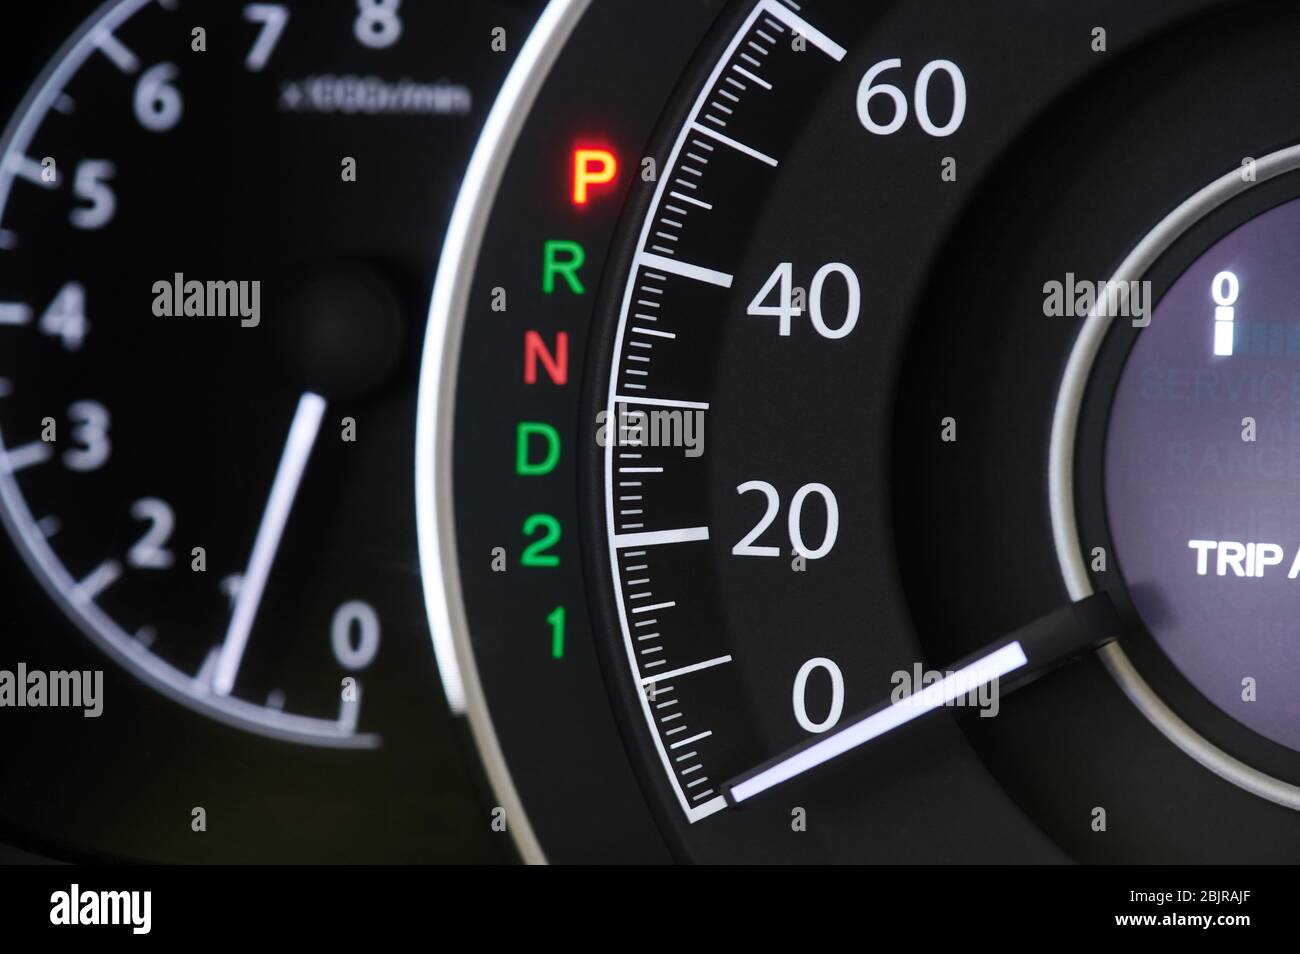 Macro tableau de bord voiture moderne avec indicateur de vitesse Banque D'Images